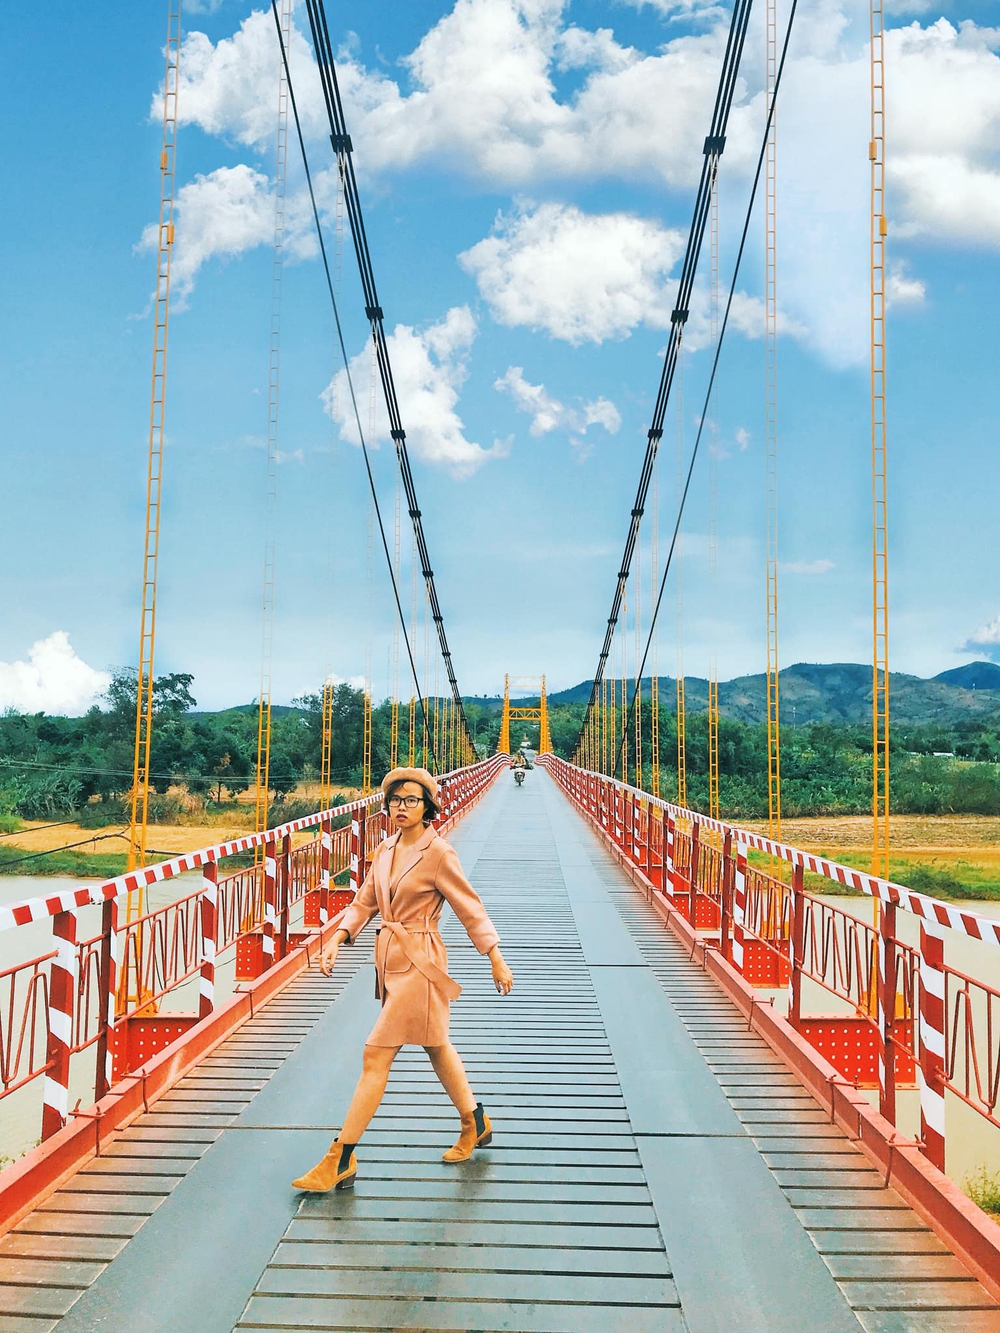 4 cây cầu treo siêu đẹp ở Việt Nam: Cứ đến là “lụm ảnh mỏi tay” nhưng lại không dành cho người yếu tim - Ảnh 14.